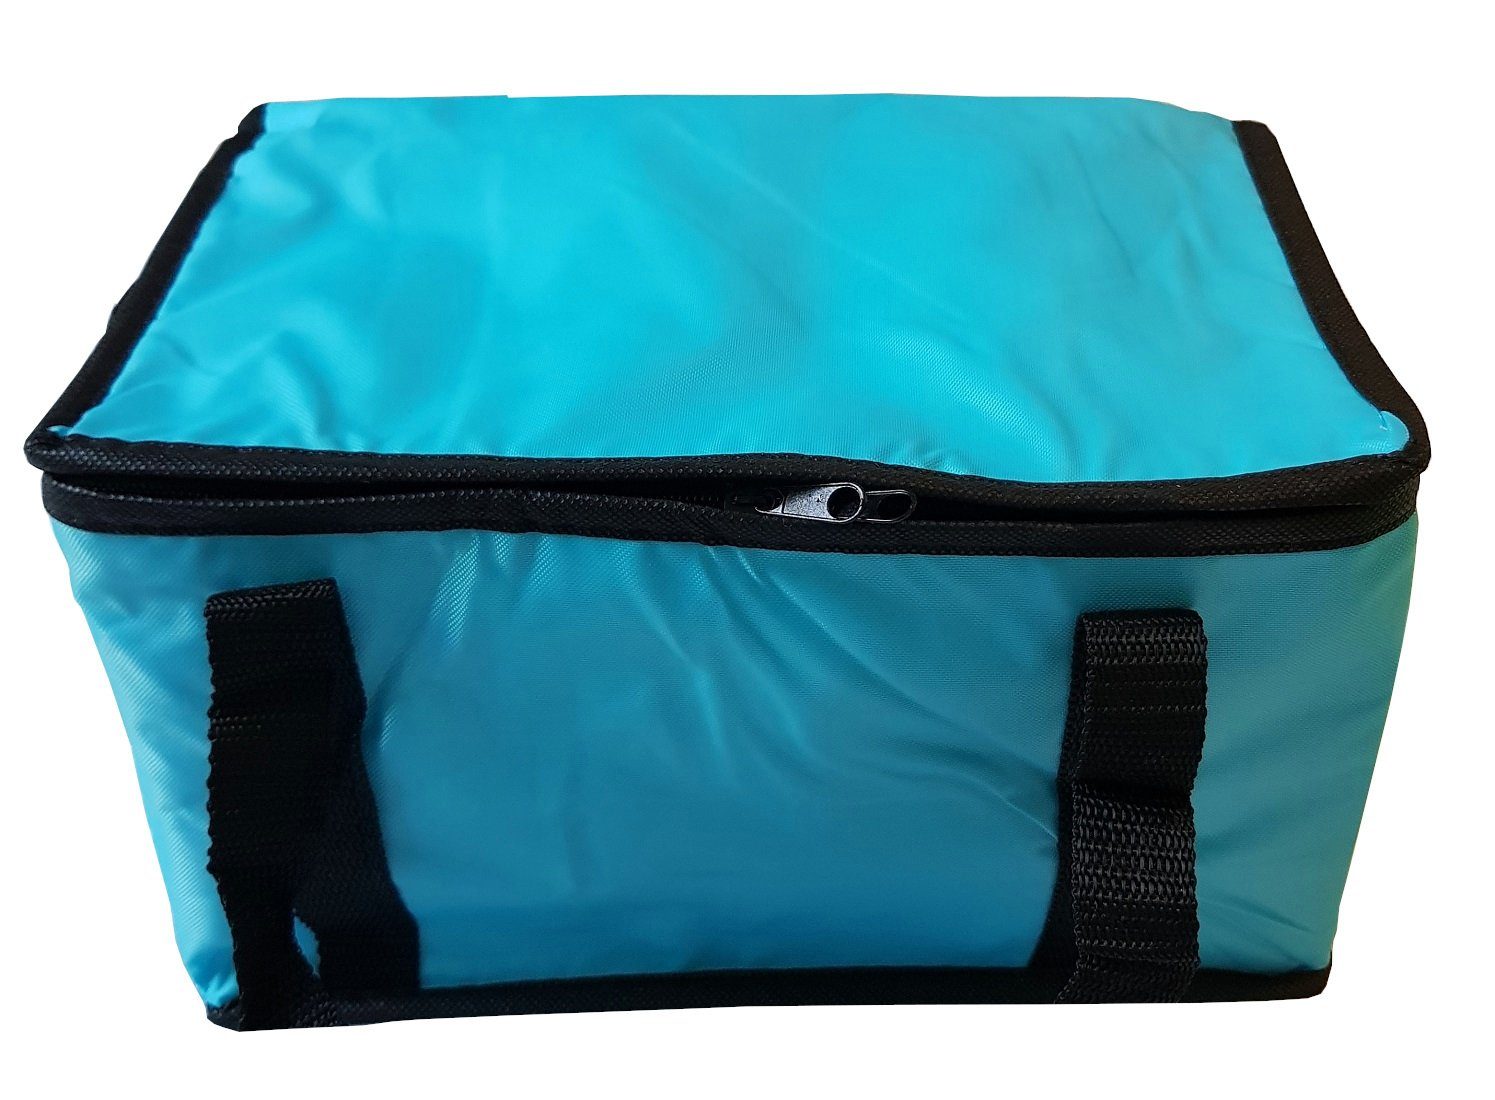 Provance Kühltasche Kühltasche Einkaufstasche Kühlbox Isoliertasche Türkis 9,5L Picknicktasche